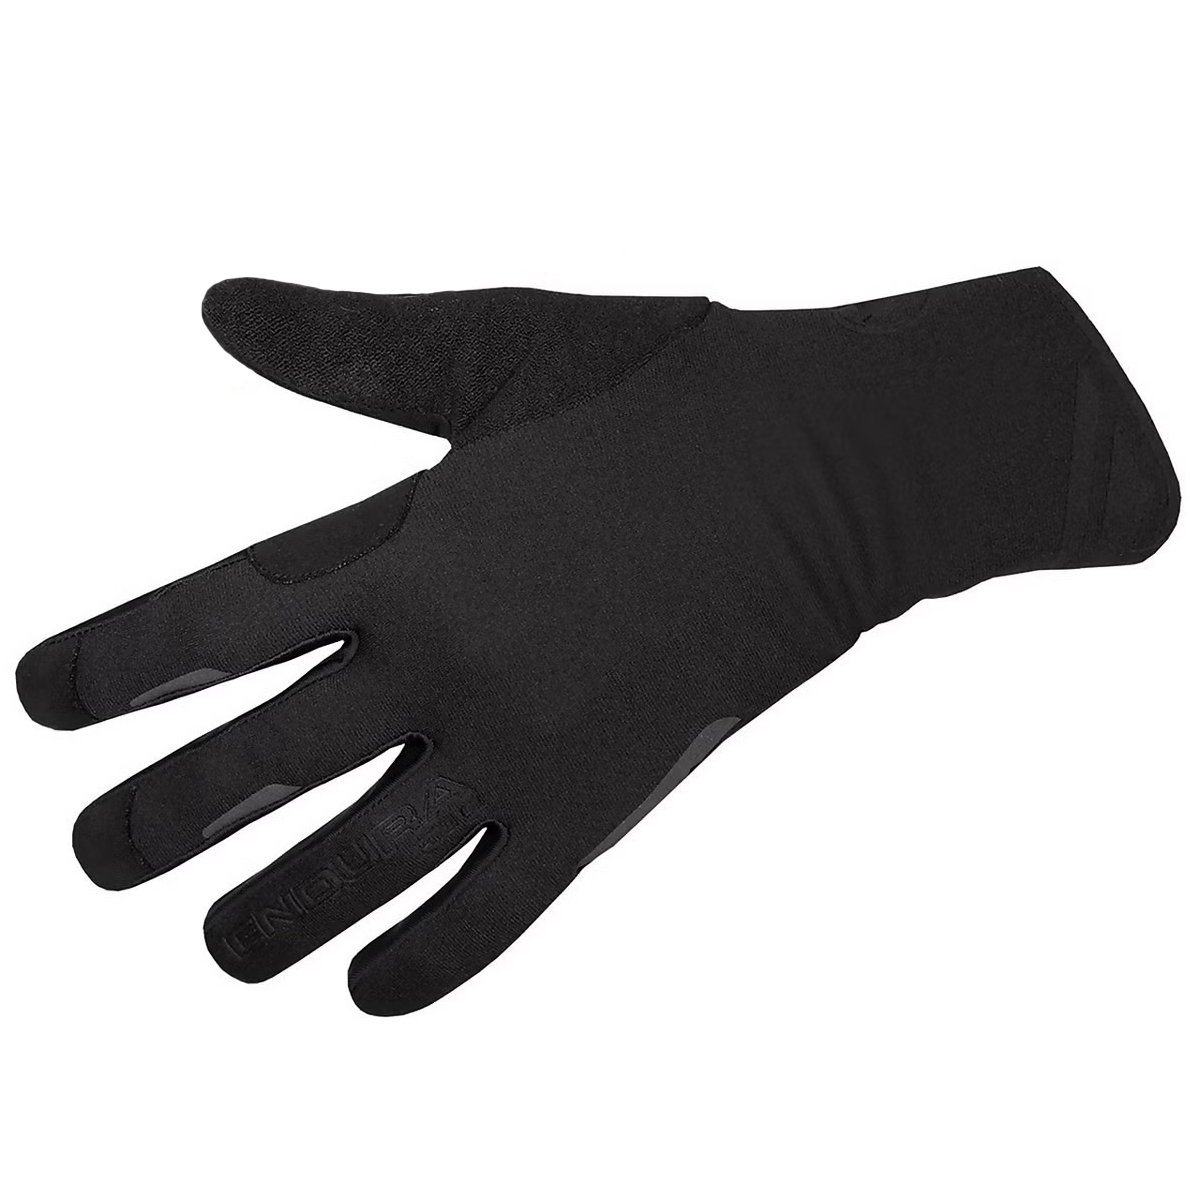 Produktbild von Endura Pro SL II Winddichte Handschuhe - schwarz